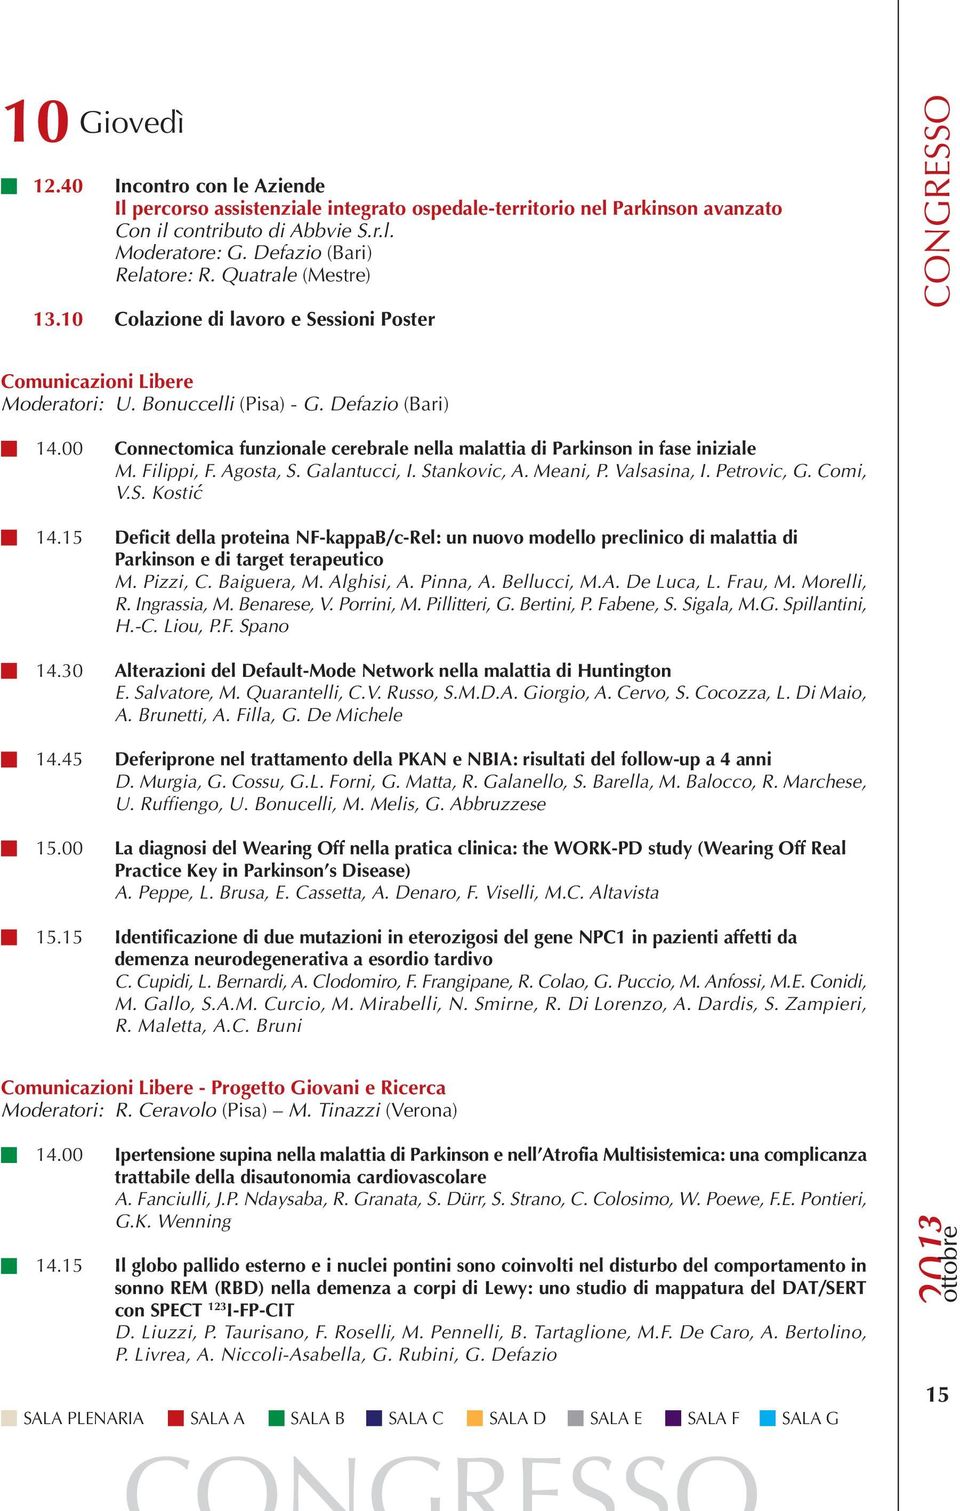 00 Connectomica funzionale cerebrale nella malattia di Parkinson in fase iniziale M. Filippi, F. Agosta, S. Galantucci, I. Stankovic, A. Meani, P. Valsasina, I. Petrovic, G. Comi, V.S. Kostić 14.